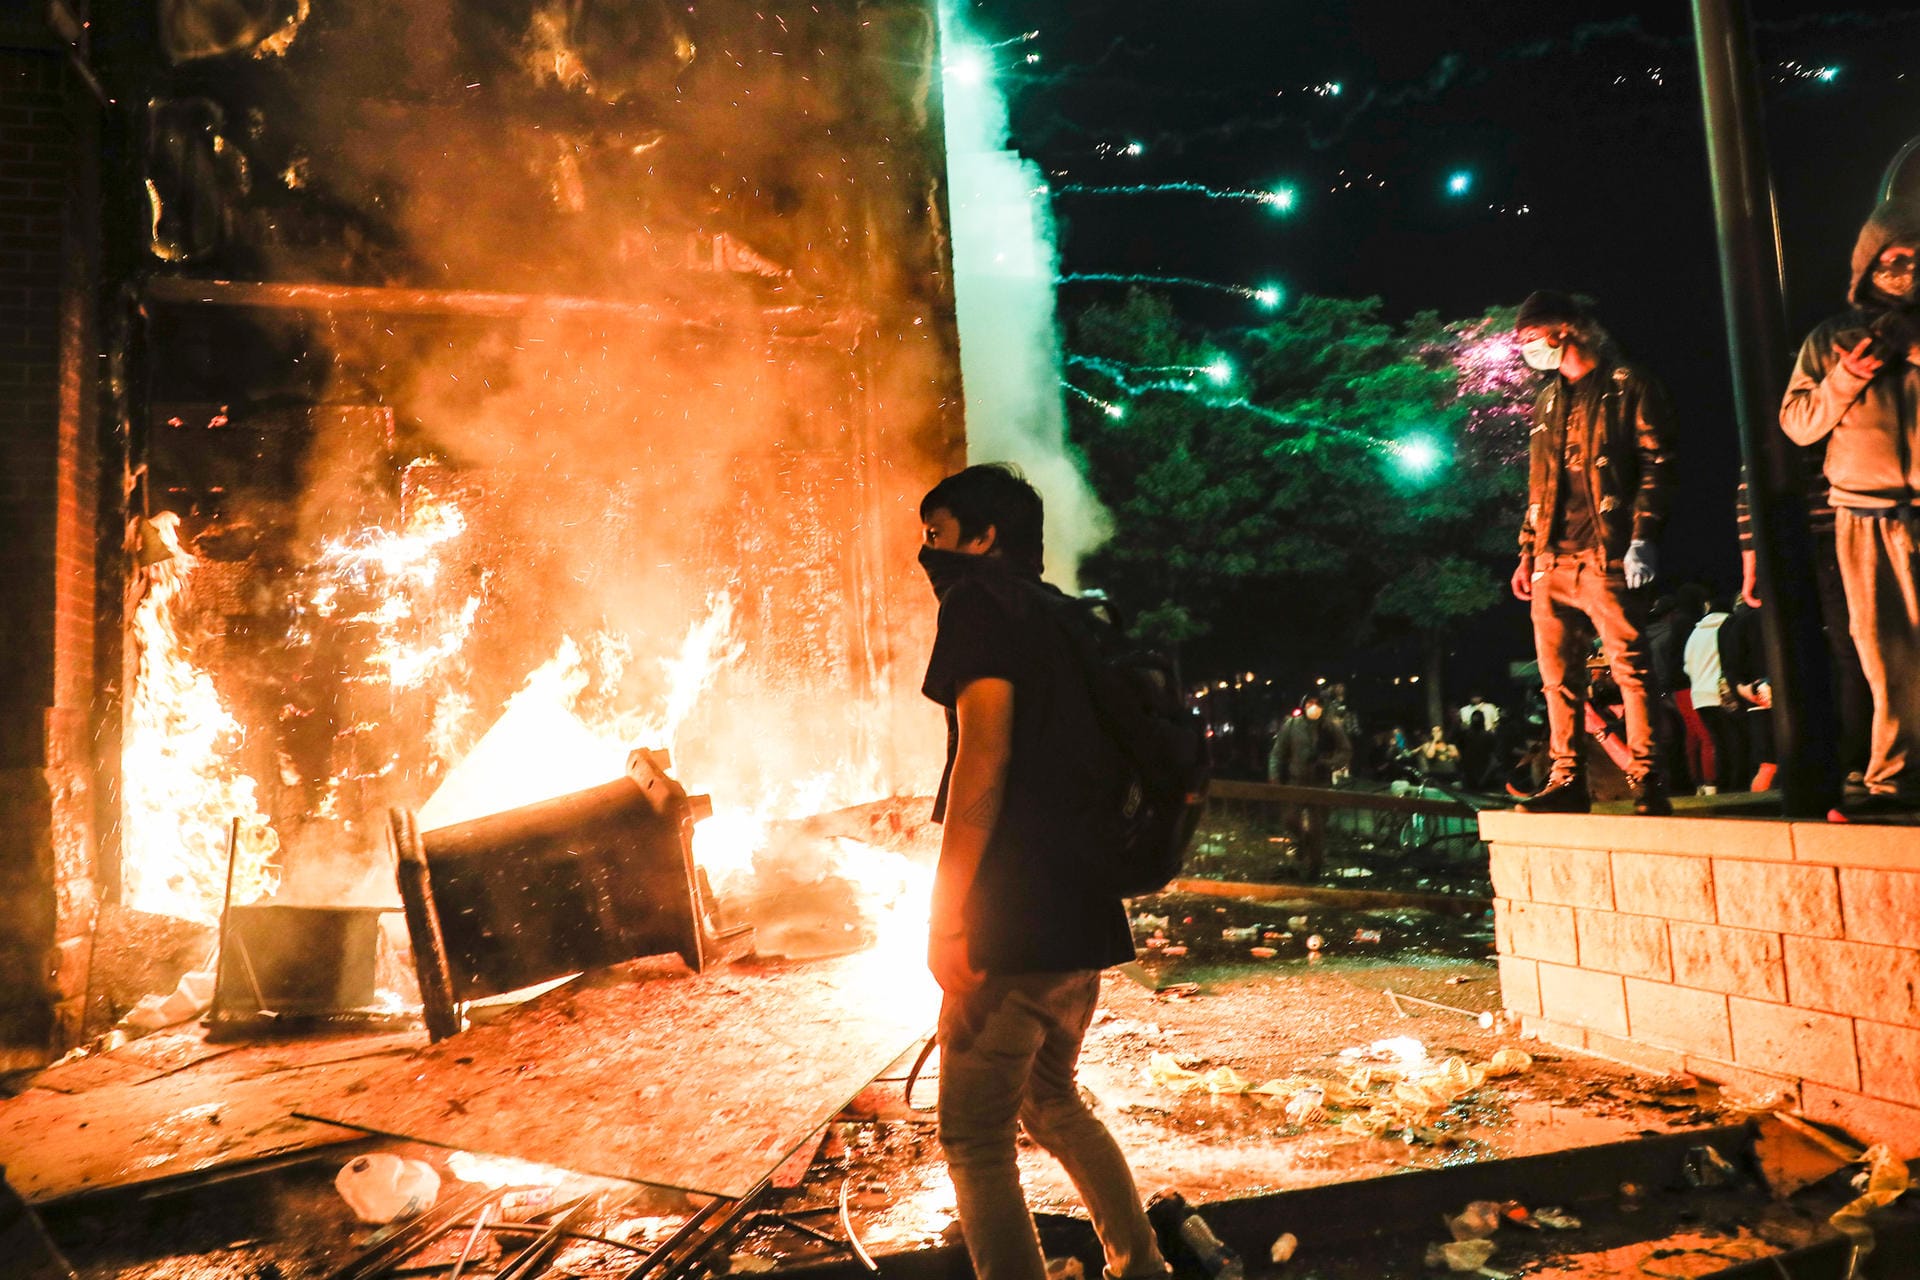 Demonstranten entzündeten mehrere Brände – unter anderem in einem Polizeigebäude.